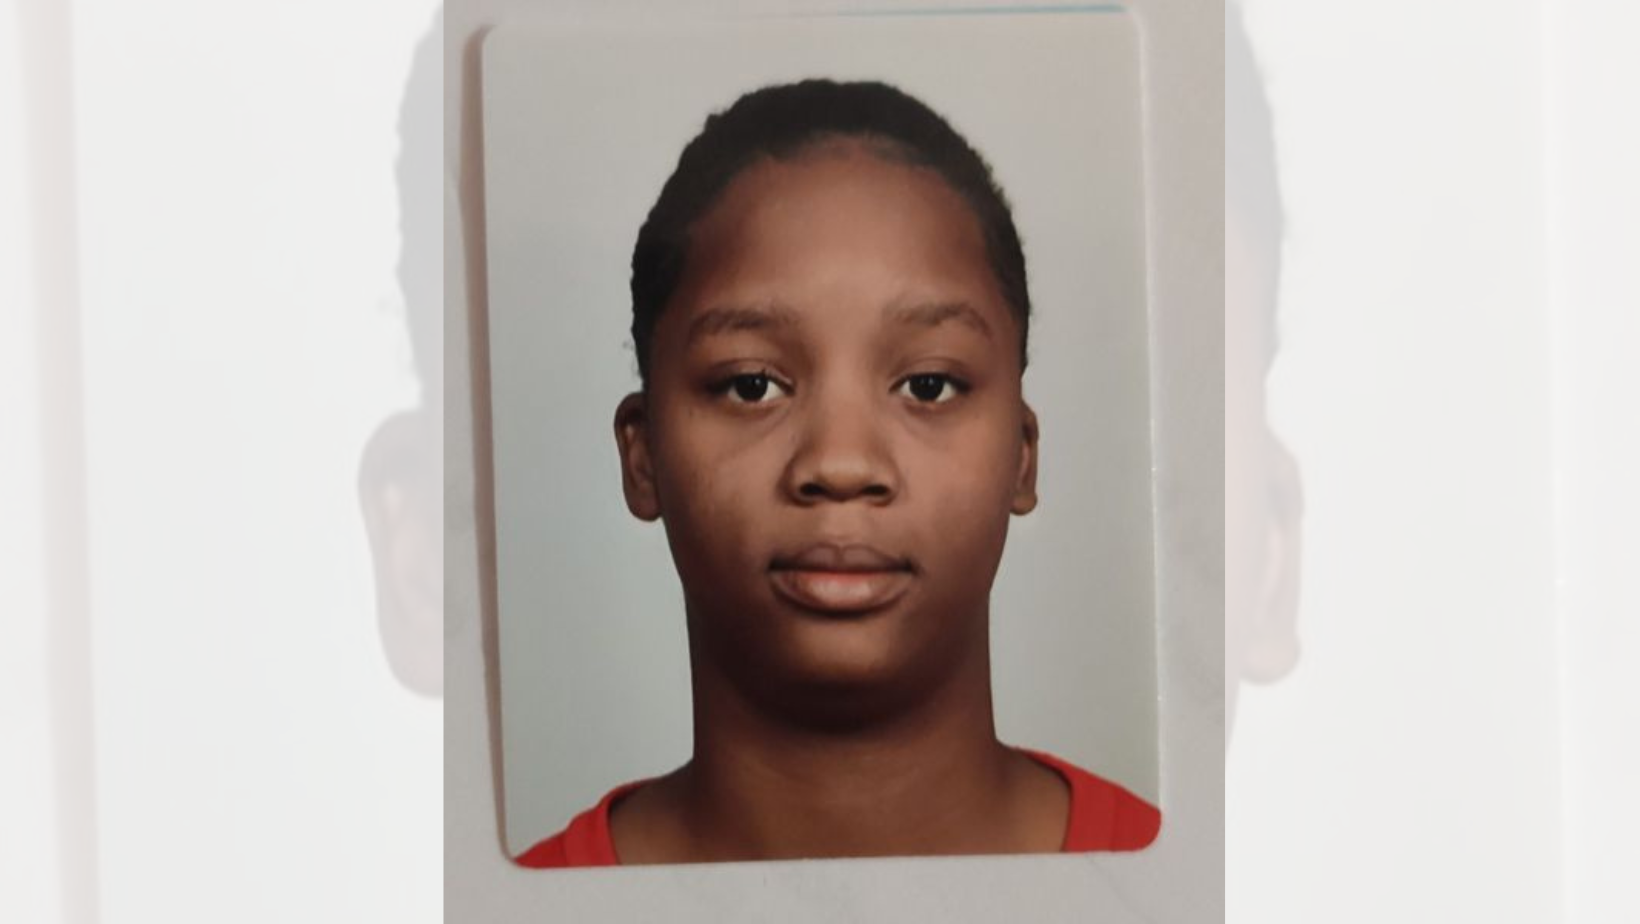     Océane, 13 ans, est portée disparue

